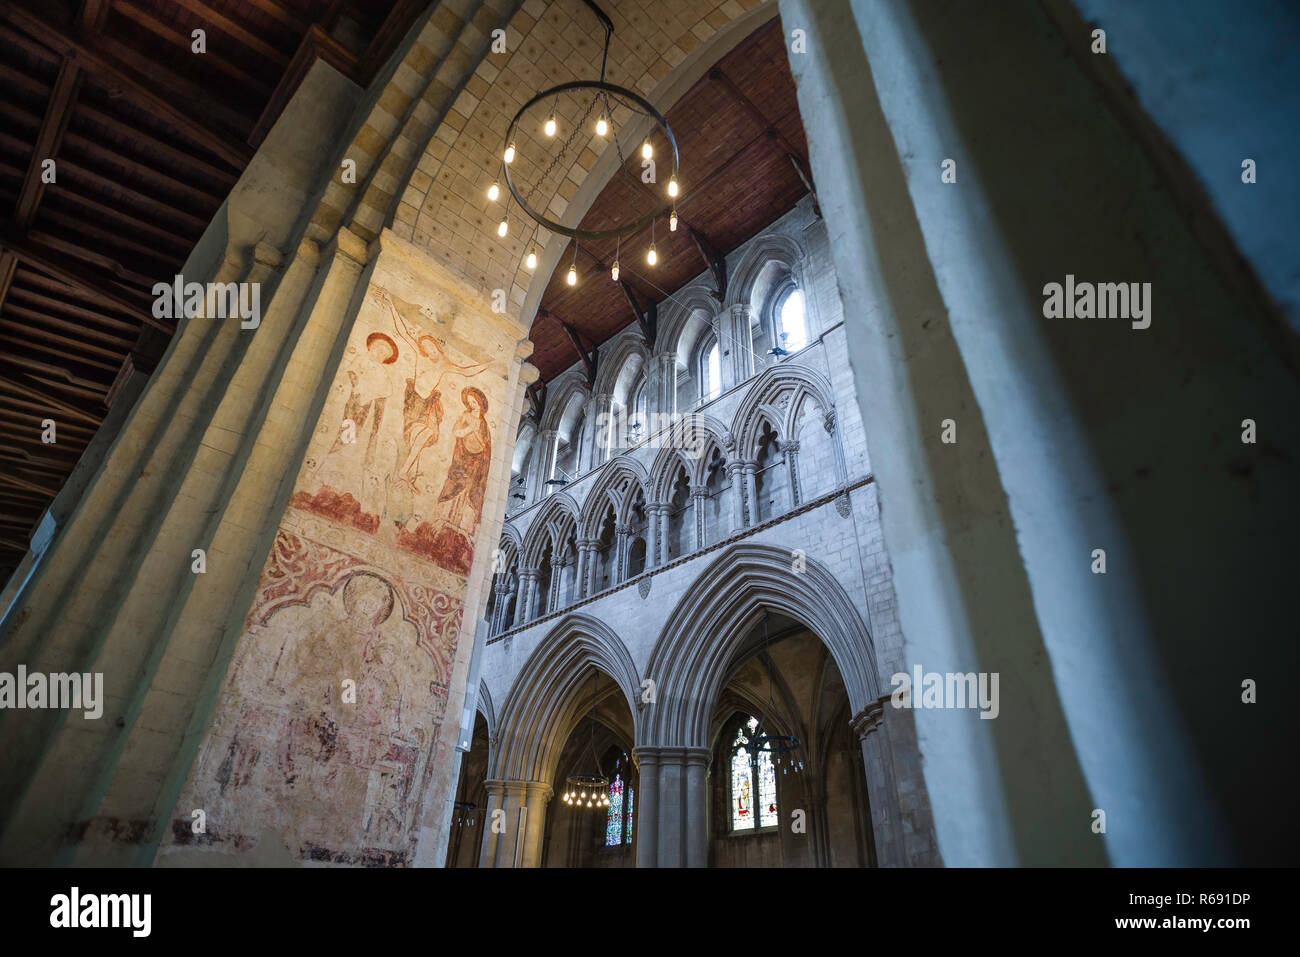 St Albans Cathedral Regno Unito, vista di un muro medievale dipinto raffigurante la Crocifissione di Cristo all'interno di St Albans Cathedral, Hertfordshire, Inghilterra, Regno Unito. Foto Stock